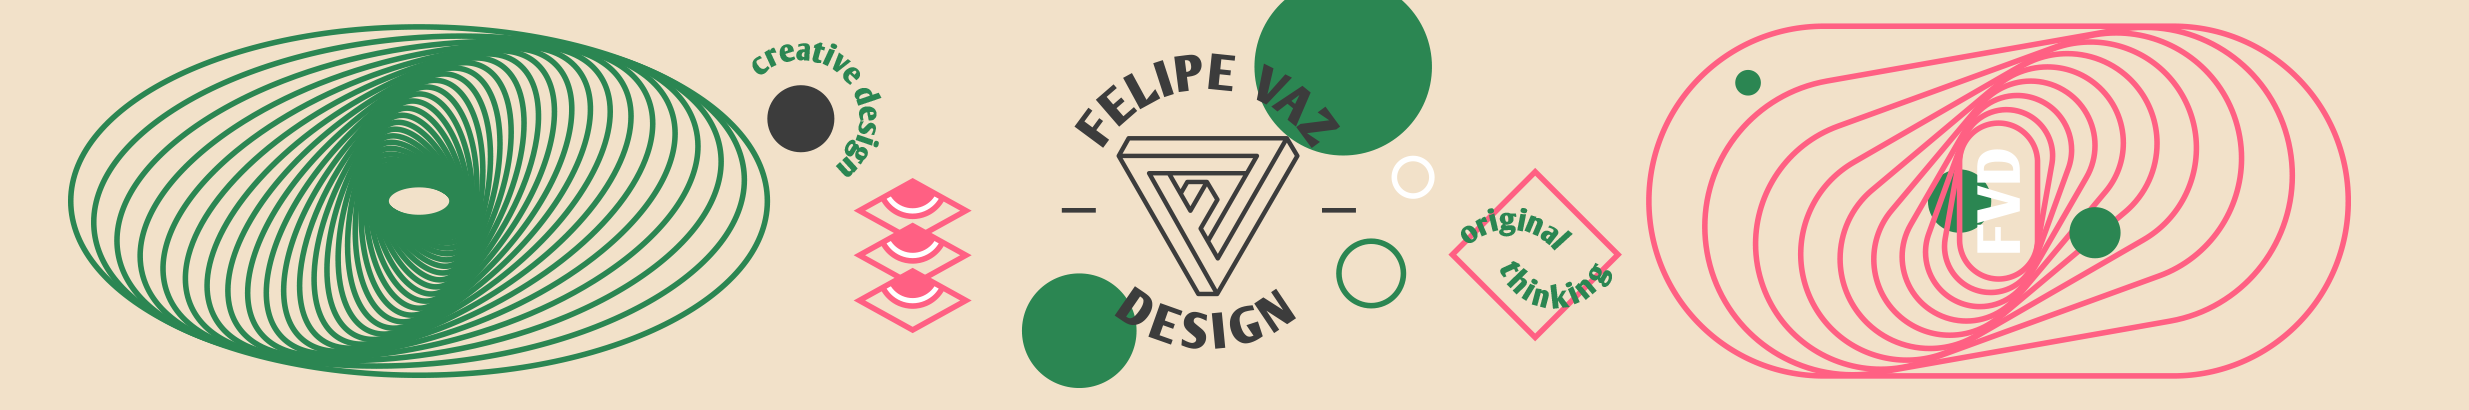 Felipe Vaz Design のプロファイルバナー